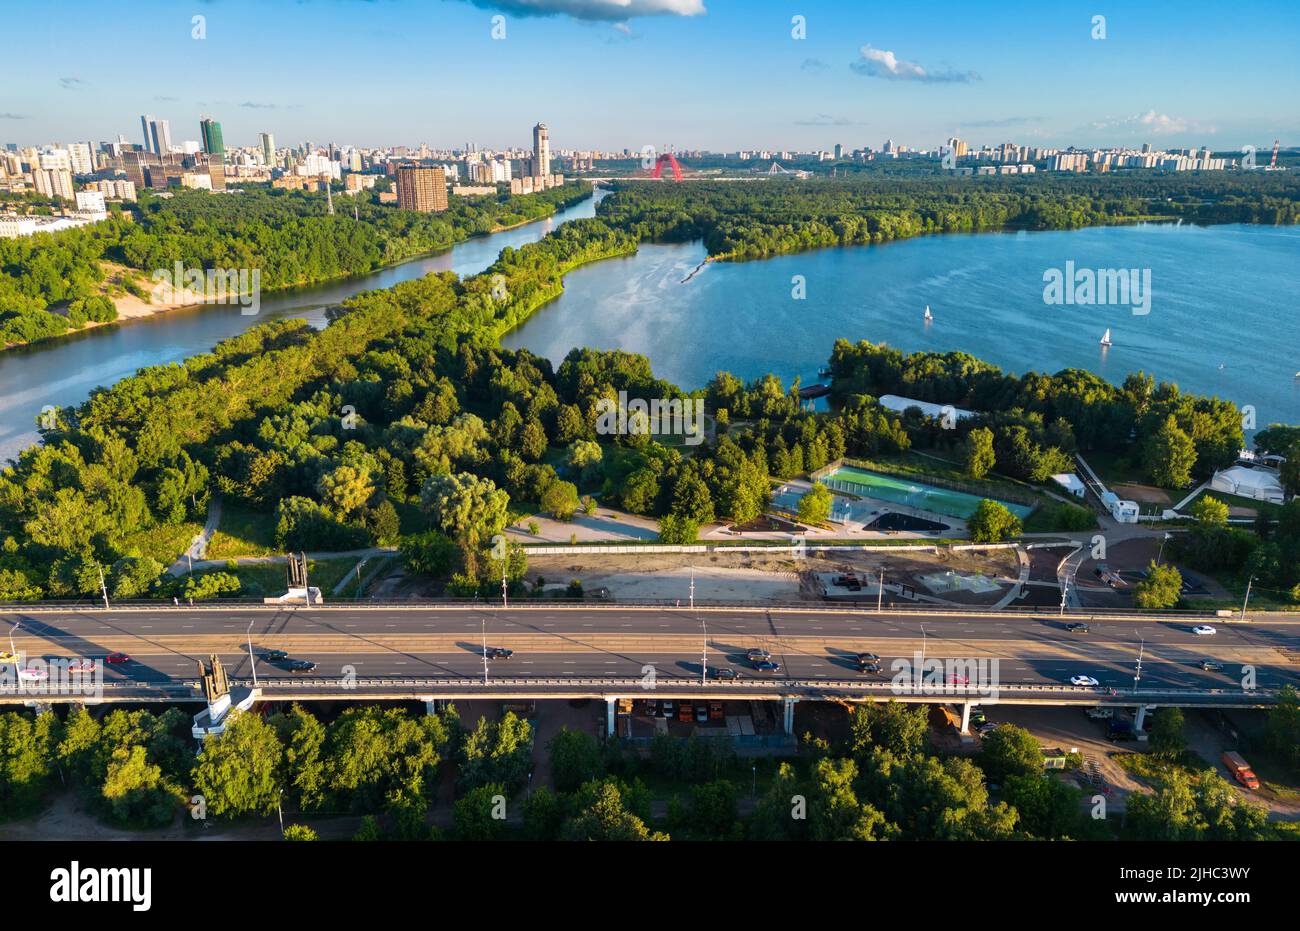 Moscou vue, Russie. Vue panoramique aérienne sur la rivière Moskva, la baie et le parc dans le quartier de Schukino. Paysage de la route du pont de Strroginsky, beau paysage de Mosco Banque D'Images